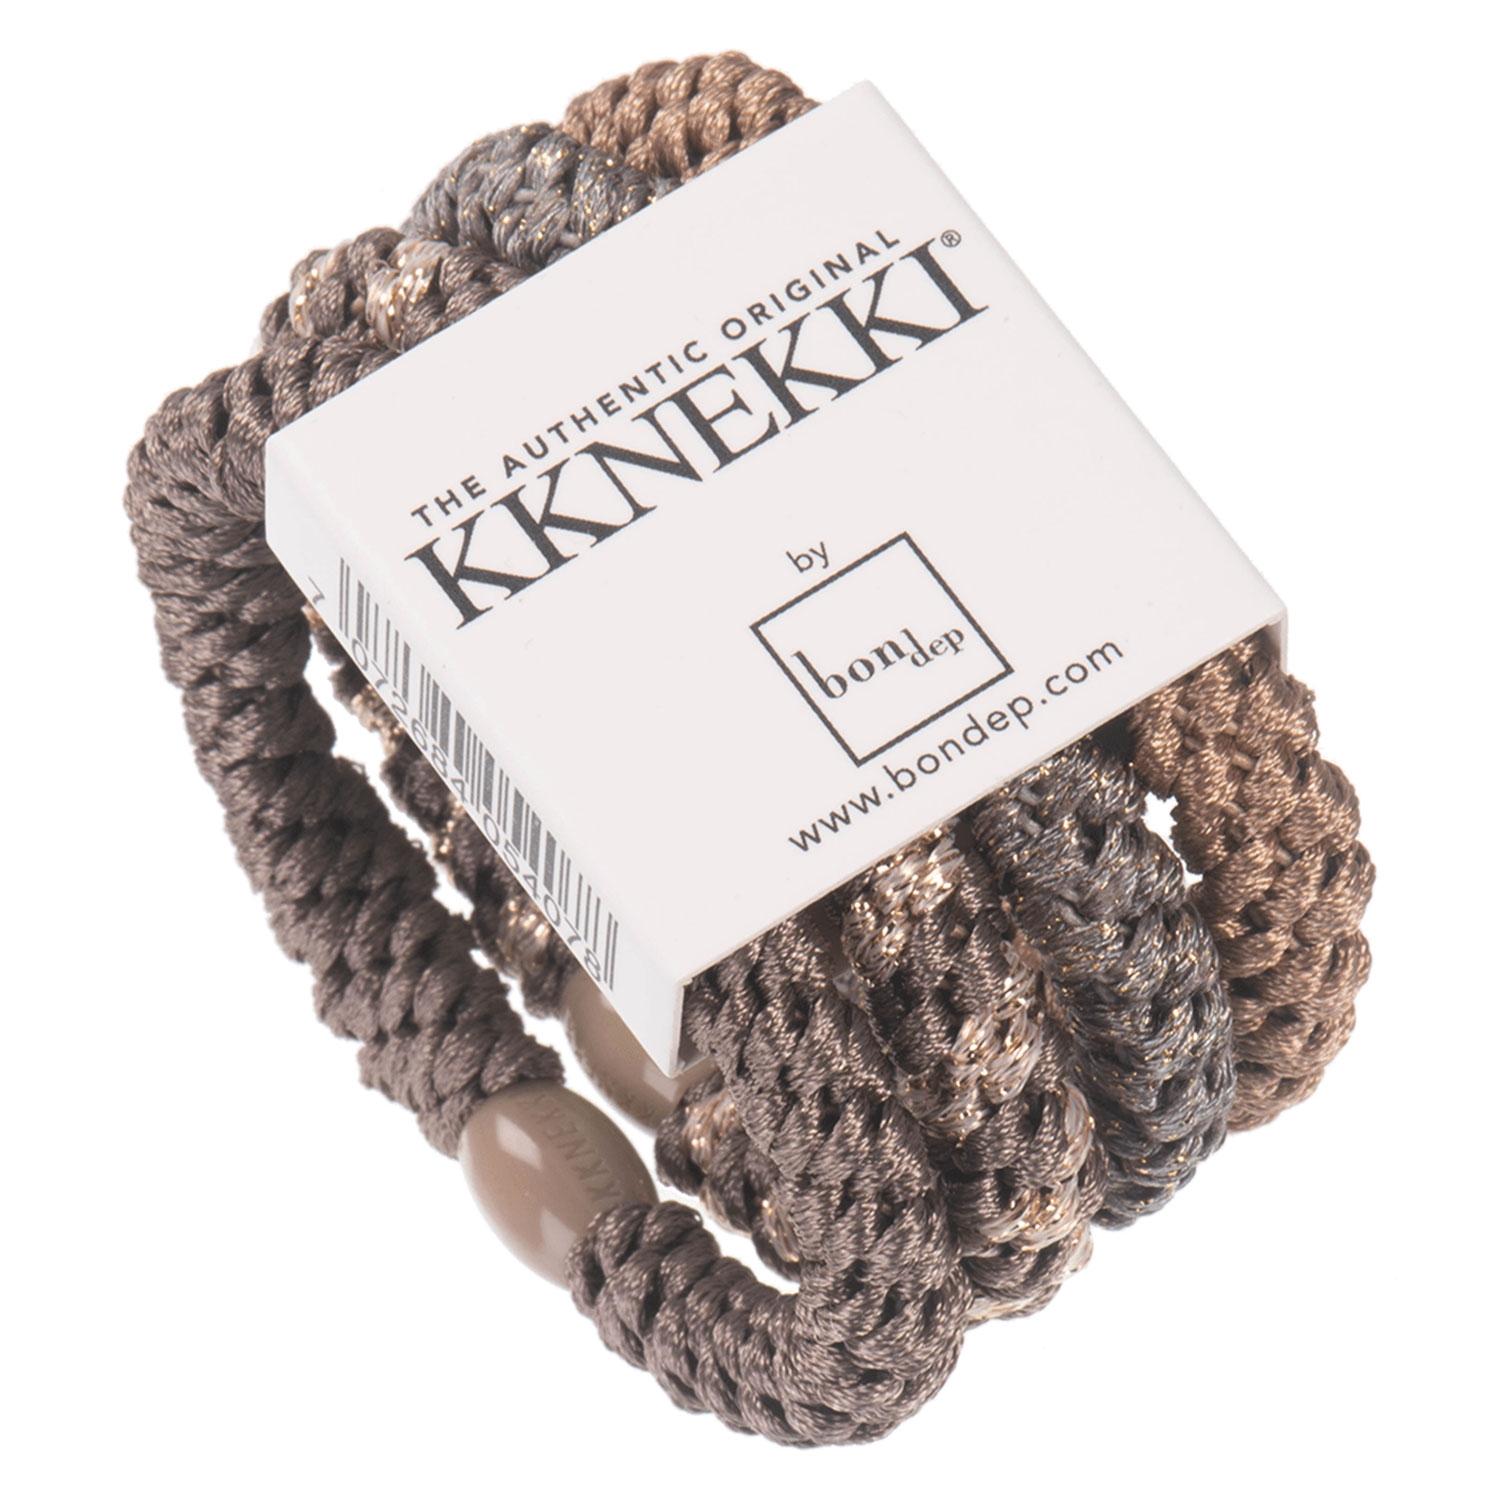 Produktbild von Kknekki - Hair Tie Chocolate Chip